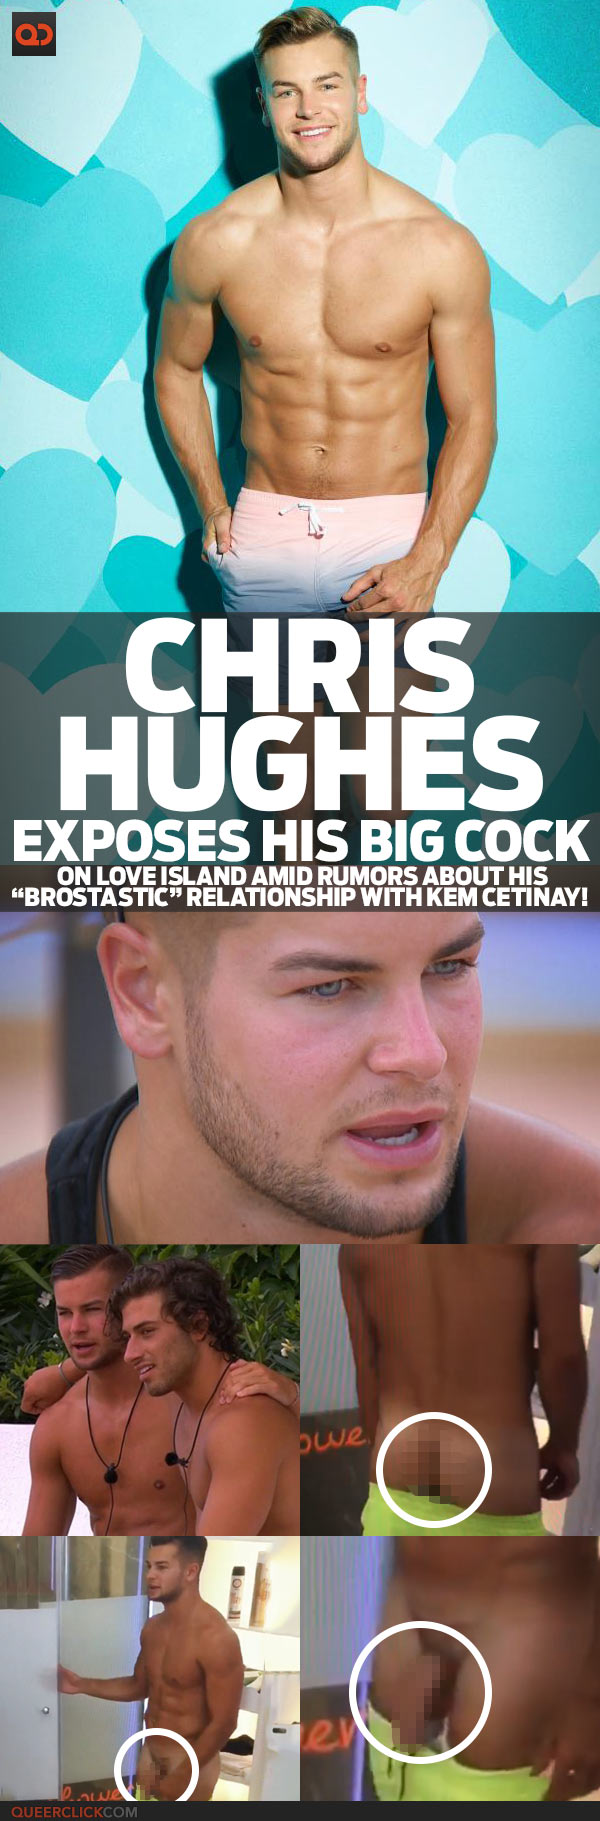 Chris hughes cock